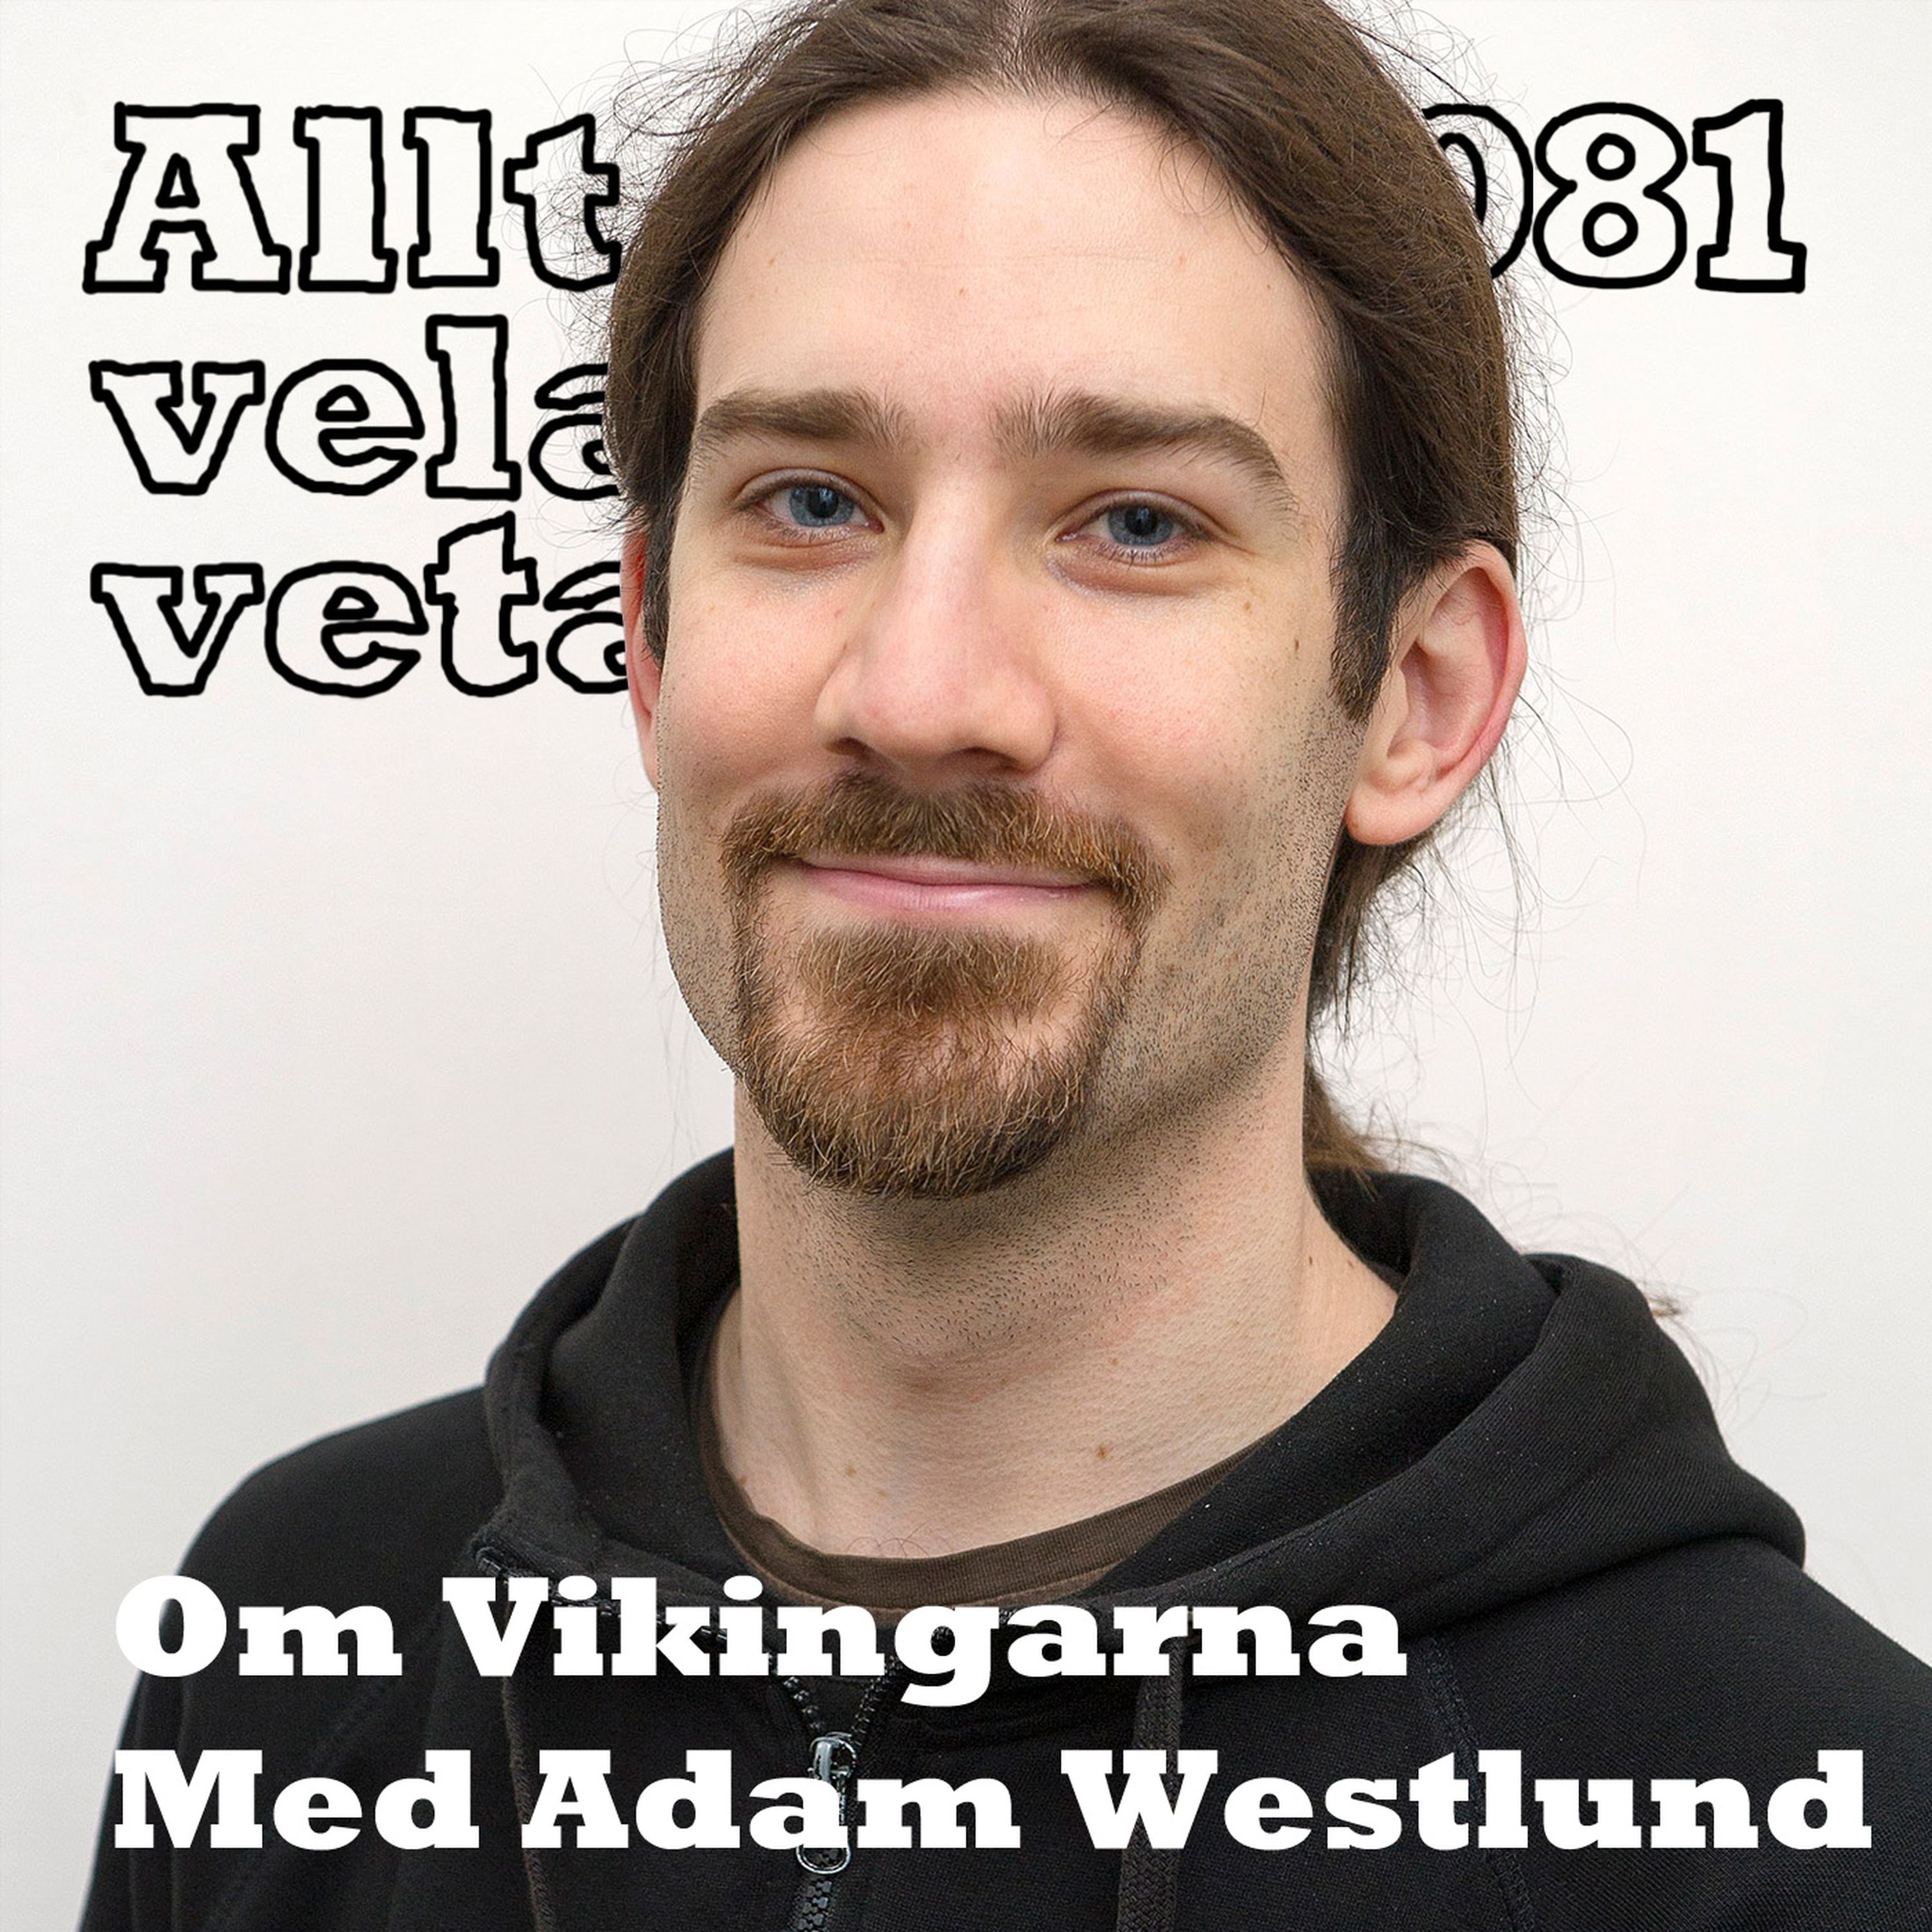 081 Om vikingarna med Adam Westlund